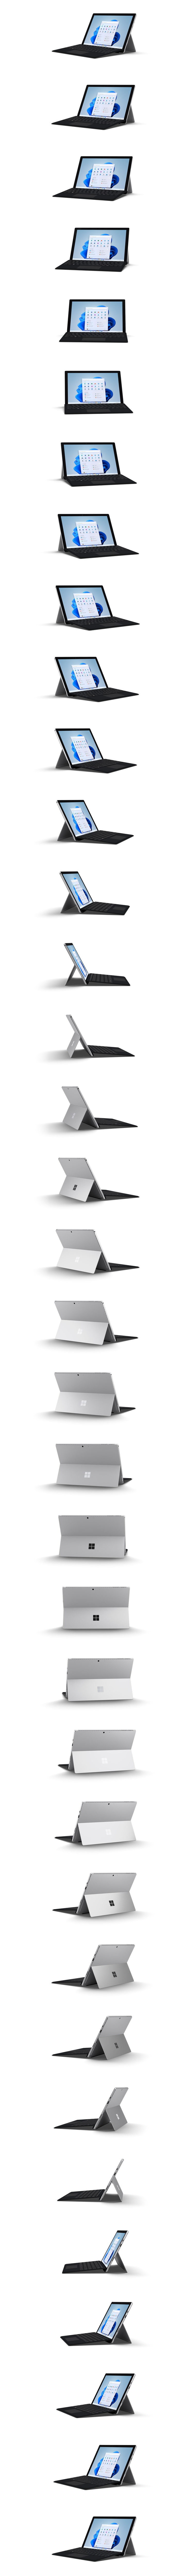 Surface Pro 7+, das in 360-Grad-Drehung gezeigt wird.